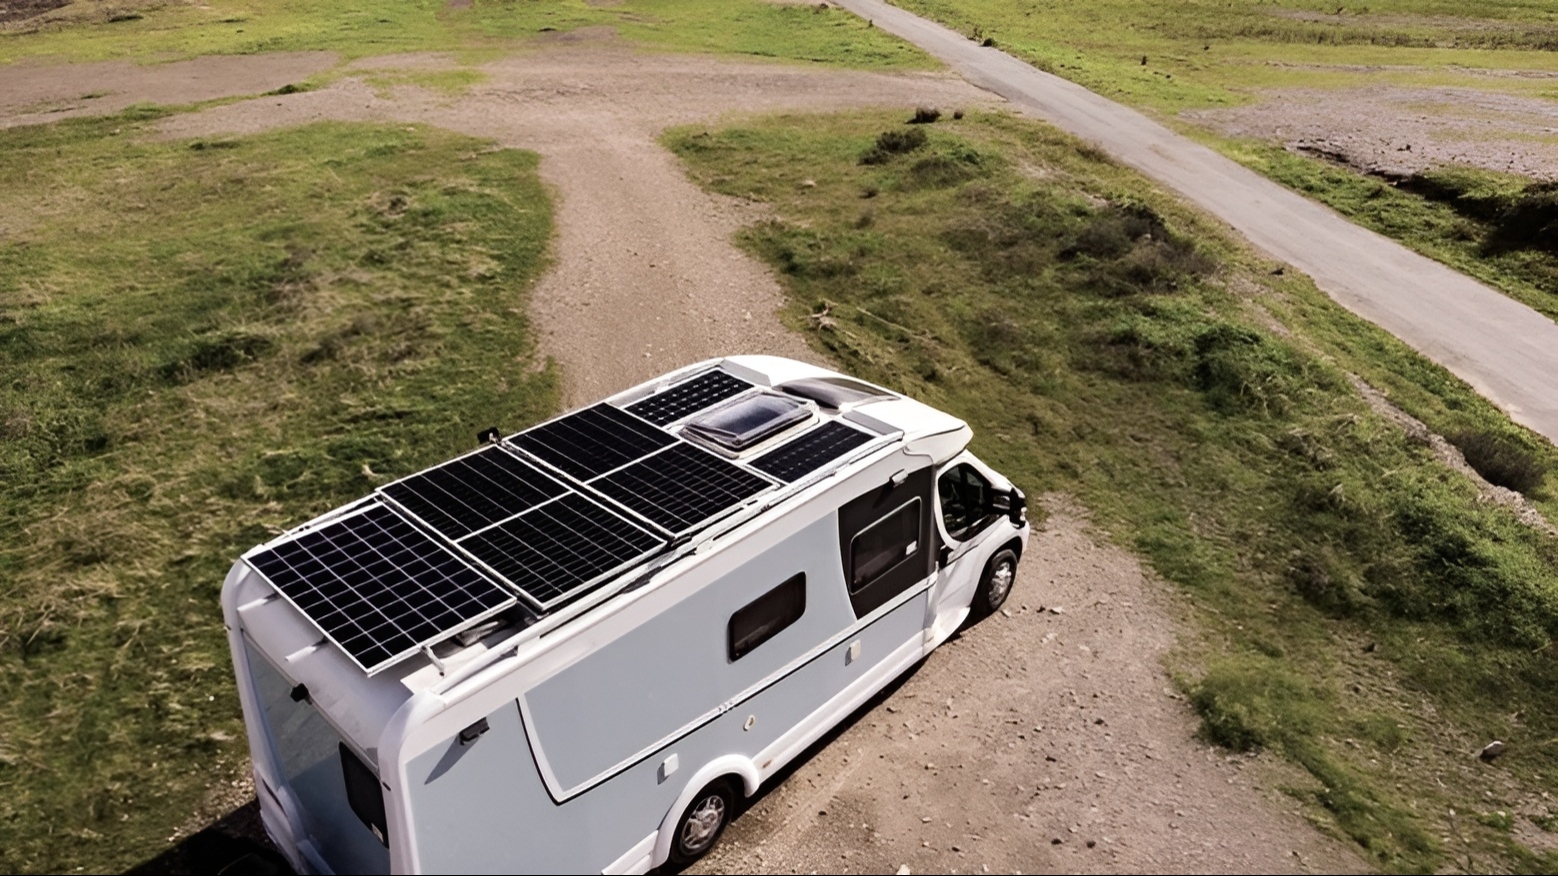 Ucuz güneş paneli alternatifi karavan için